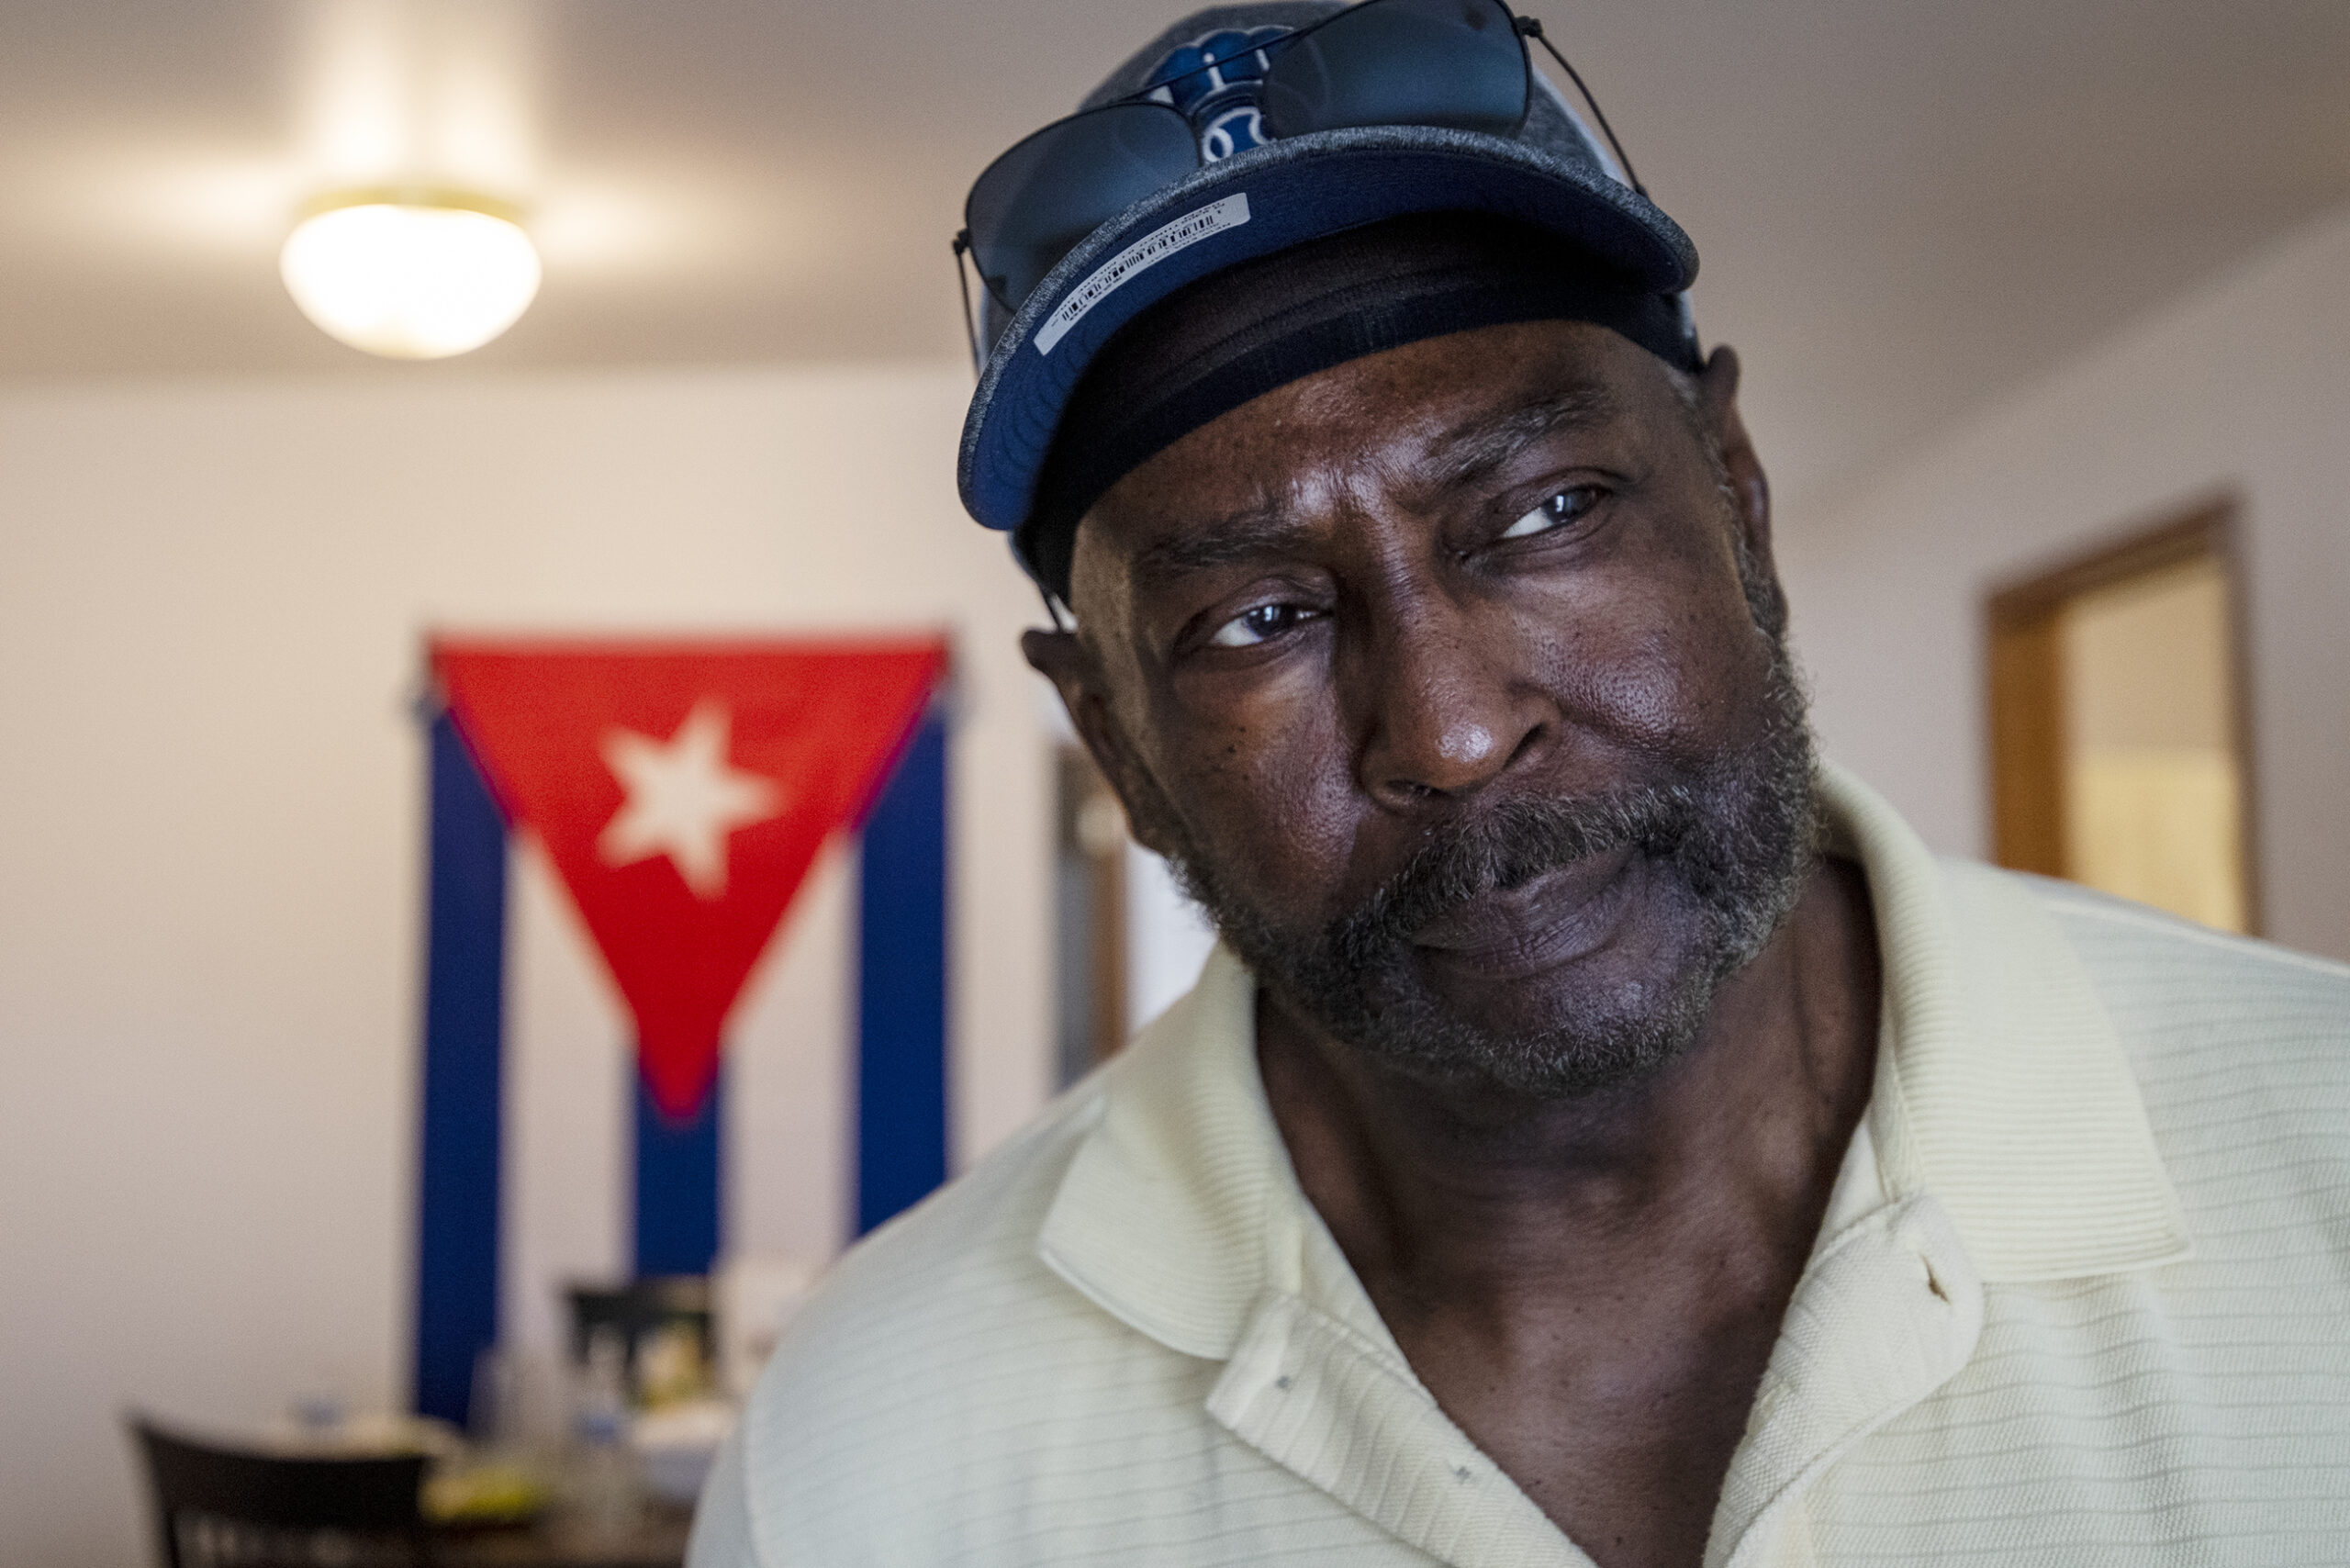 Los refugiados cubanos se reconcilian con encuentros racistas, pasados delictivos y el camino hacia adelante